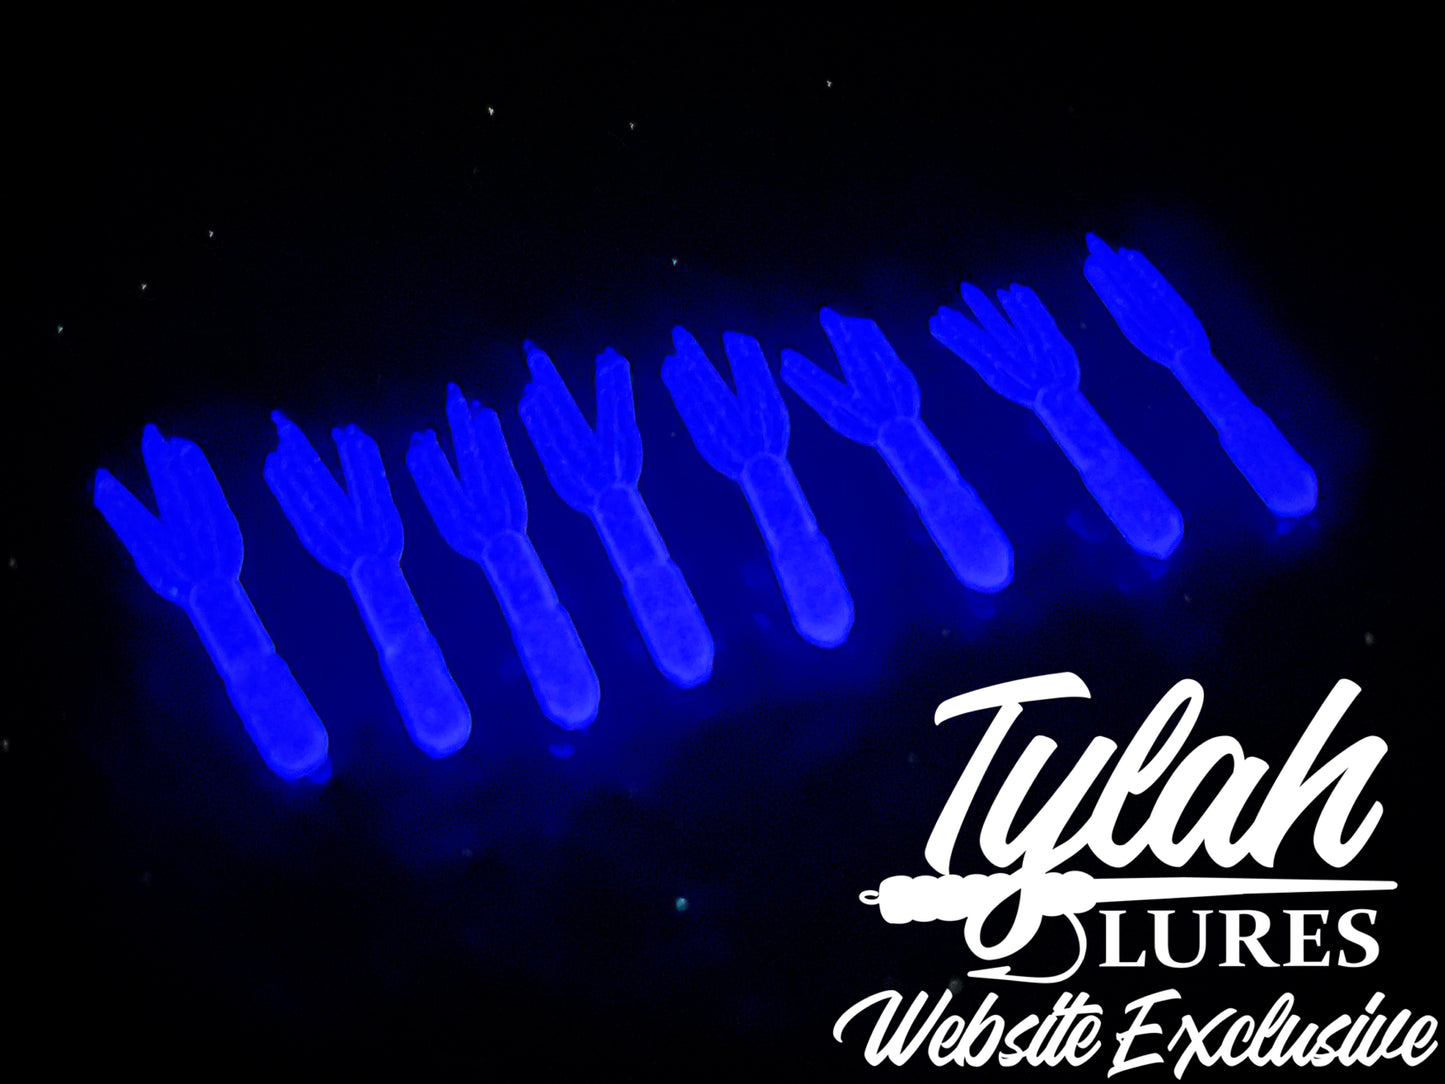 TylahLures Website Exclusive UV Purple Glow Shidasa 1in